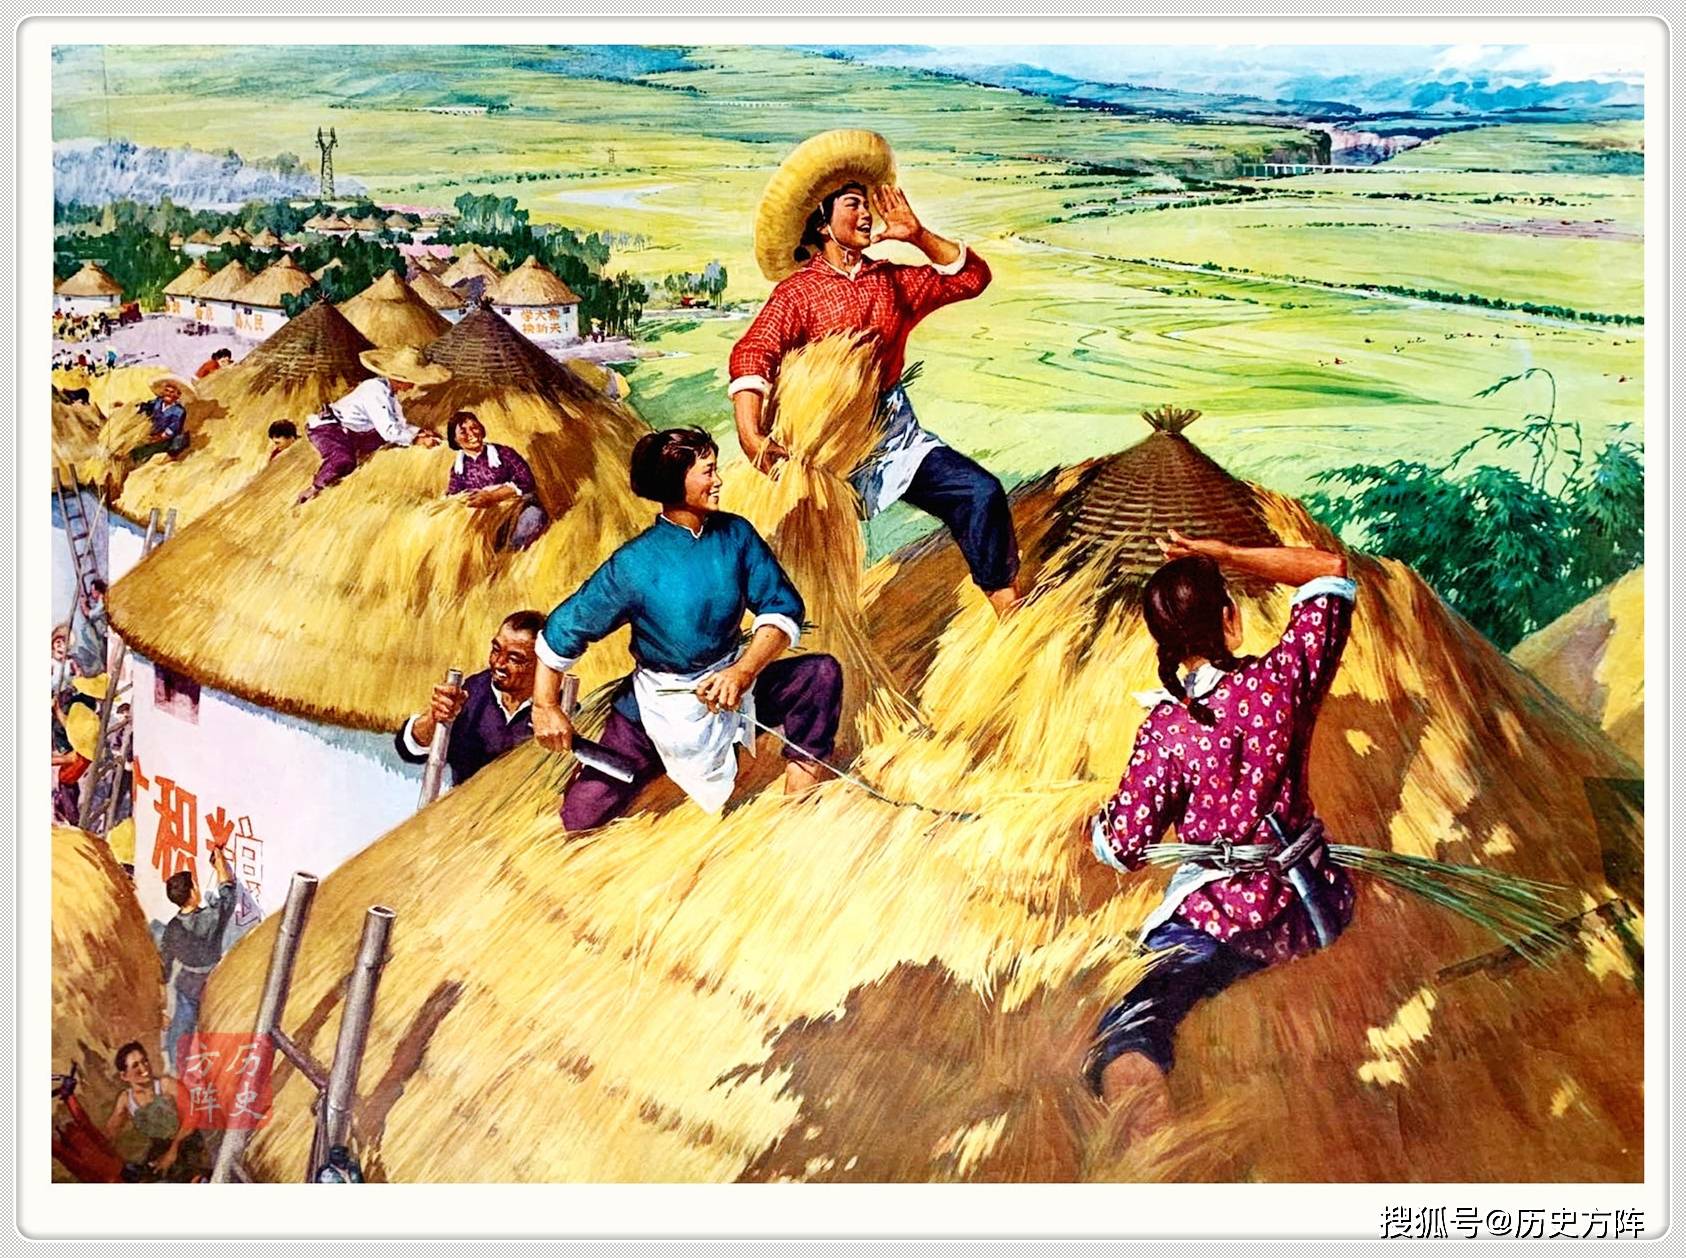 1961年年画:歌丰收 这是新中国60年代的丰收图,也是最为常见的年画之